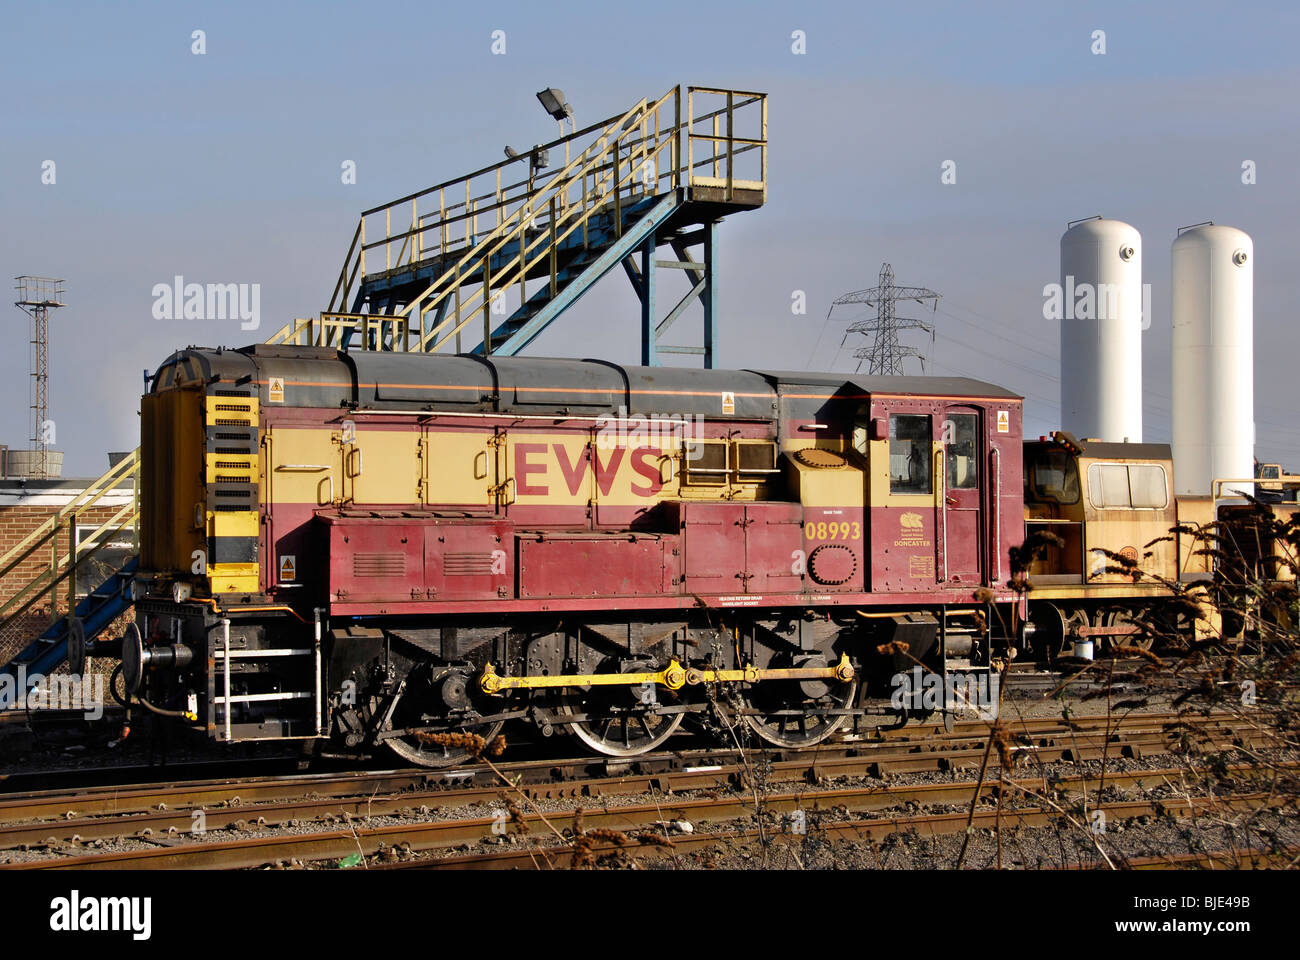 08 Locomotive locotracteur à Steelworks près Sheerness sur l'île de Sheppey, Kent, Angleterre Banque D'Images